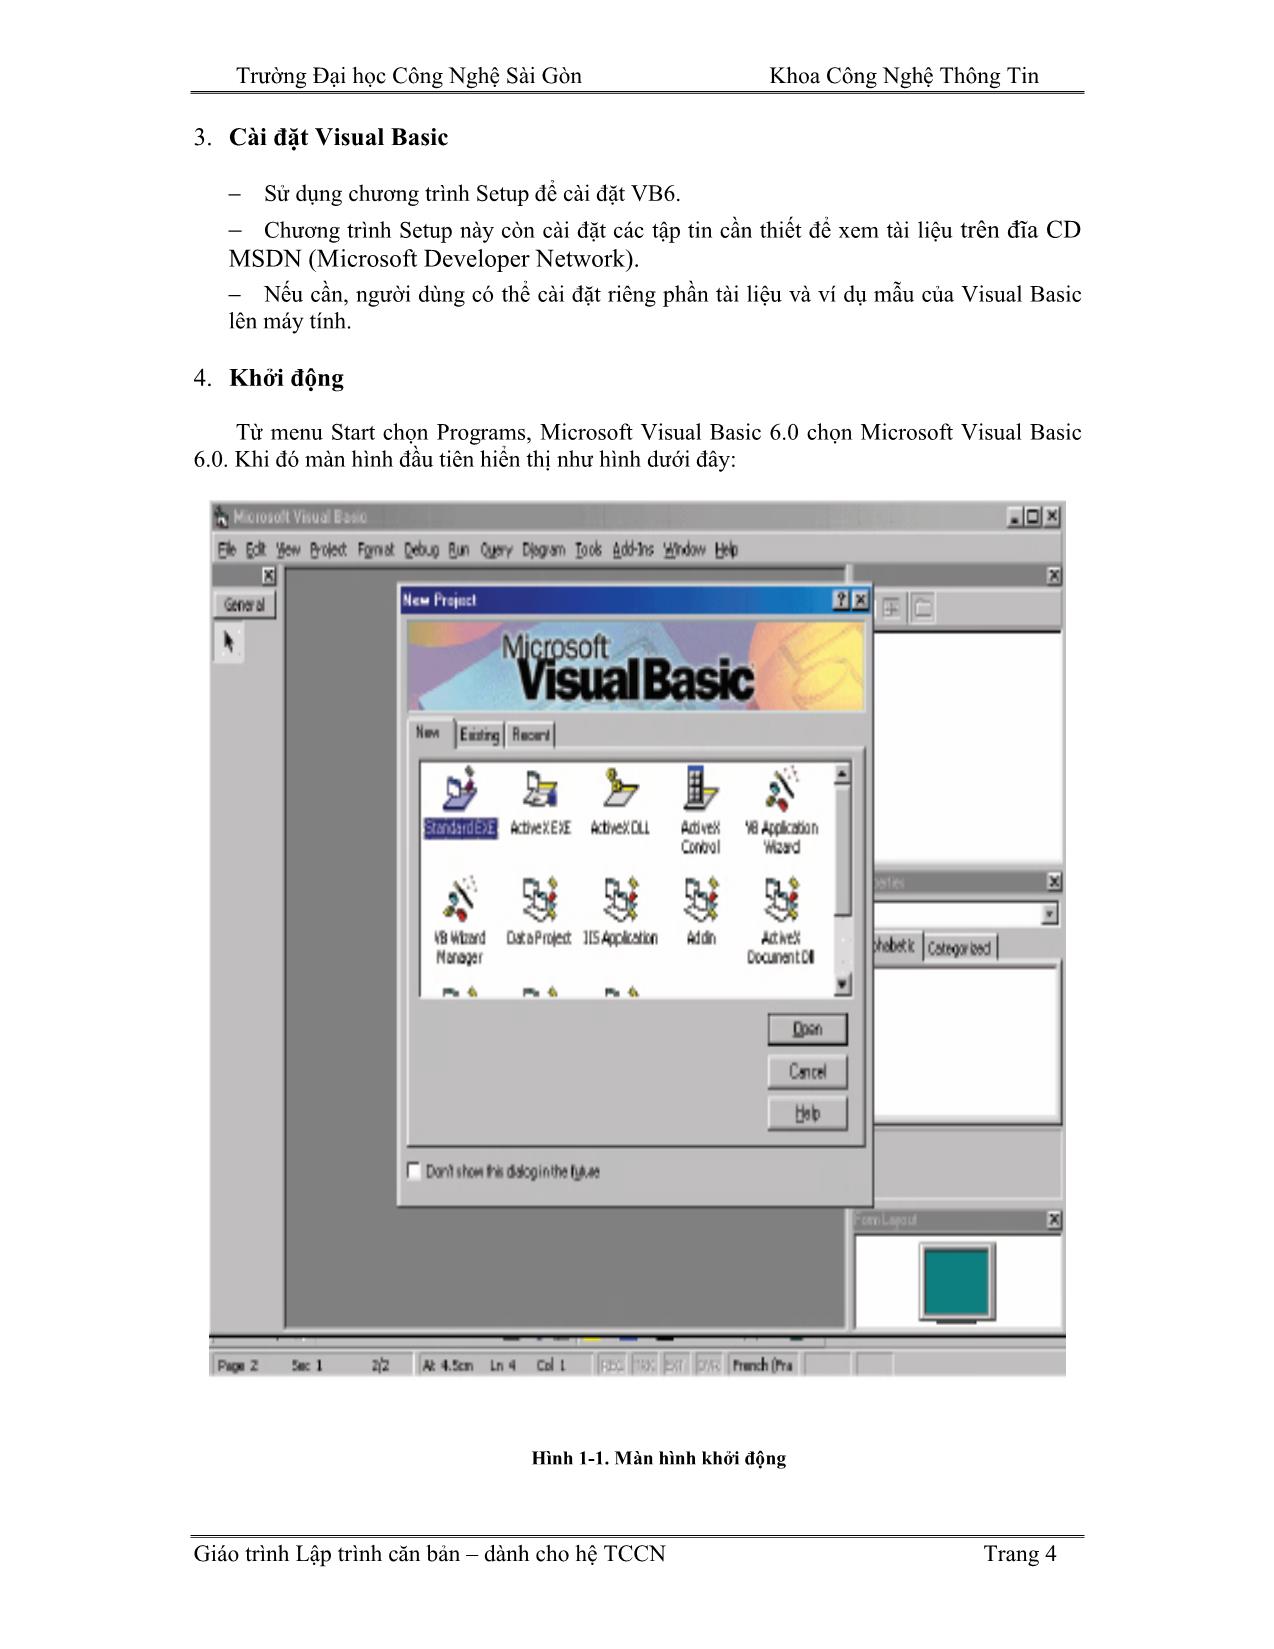 Giáo trình Lập trình căn bản Visual Basic (Phần 1) trang 4